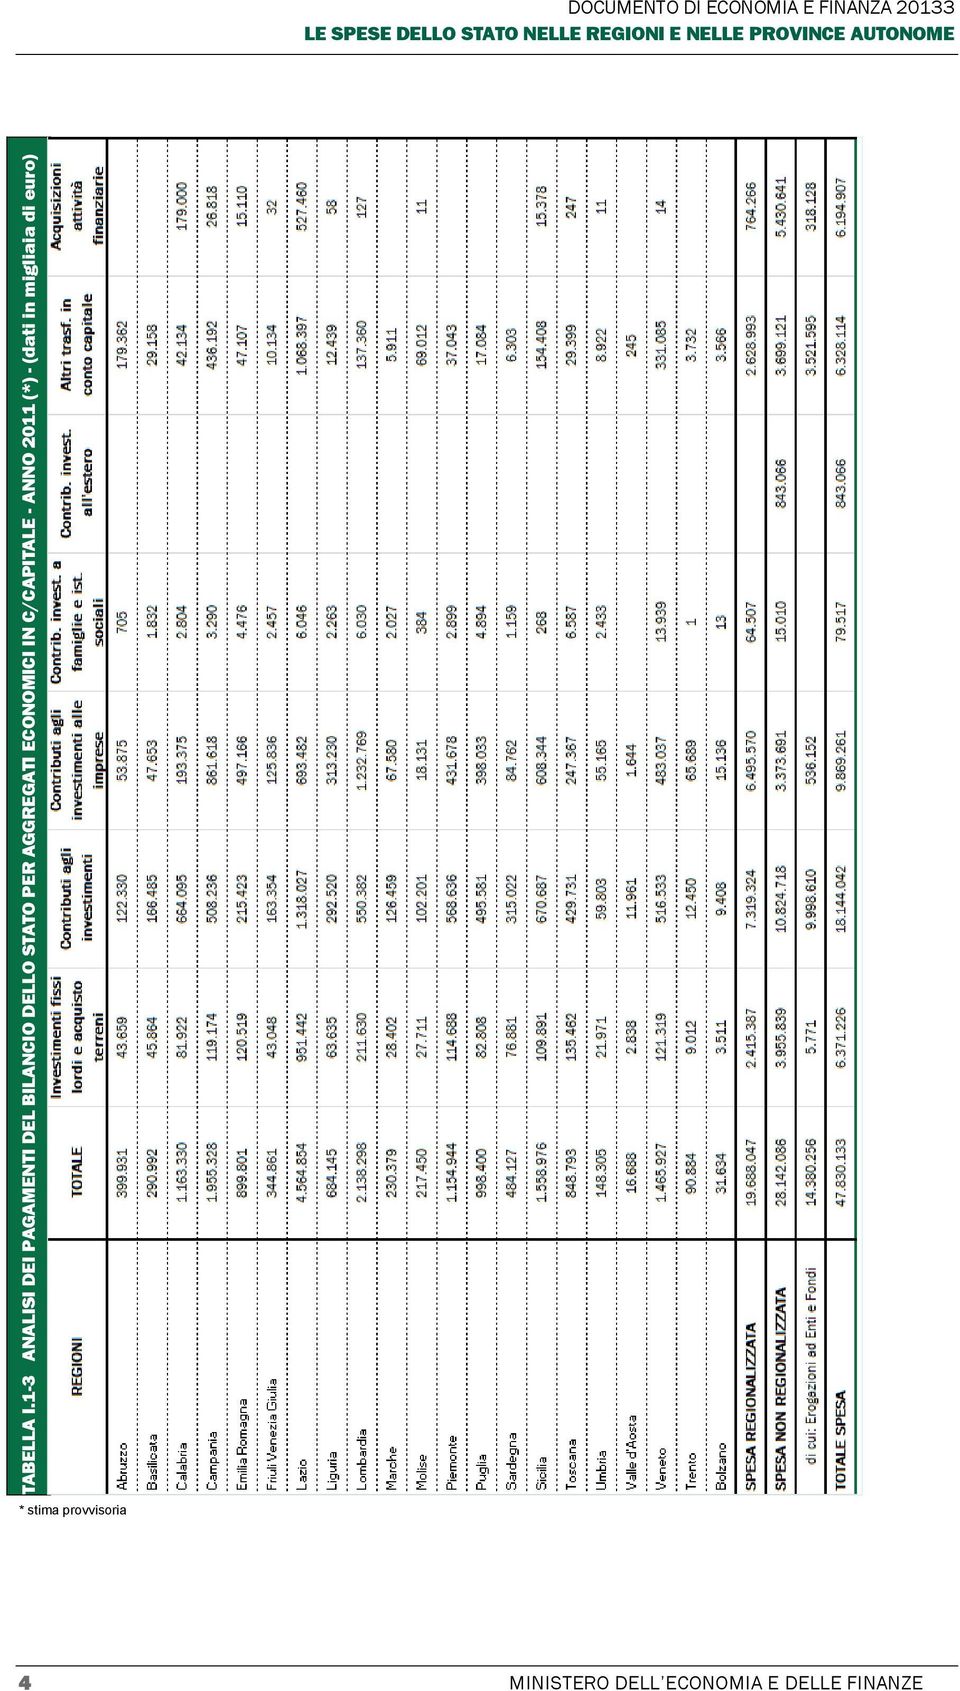 IN C/CAPITALE - ANNO 2011 (*) - (dati in migliaia di euro) DOCUMENTO DI